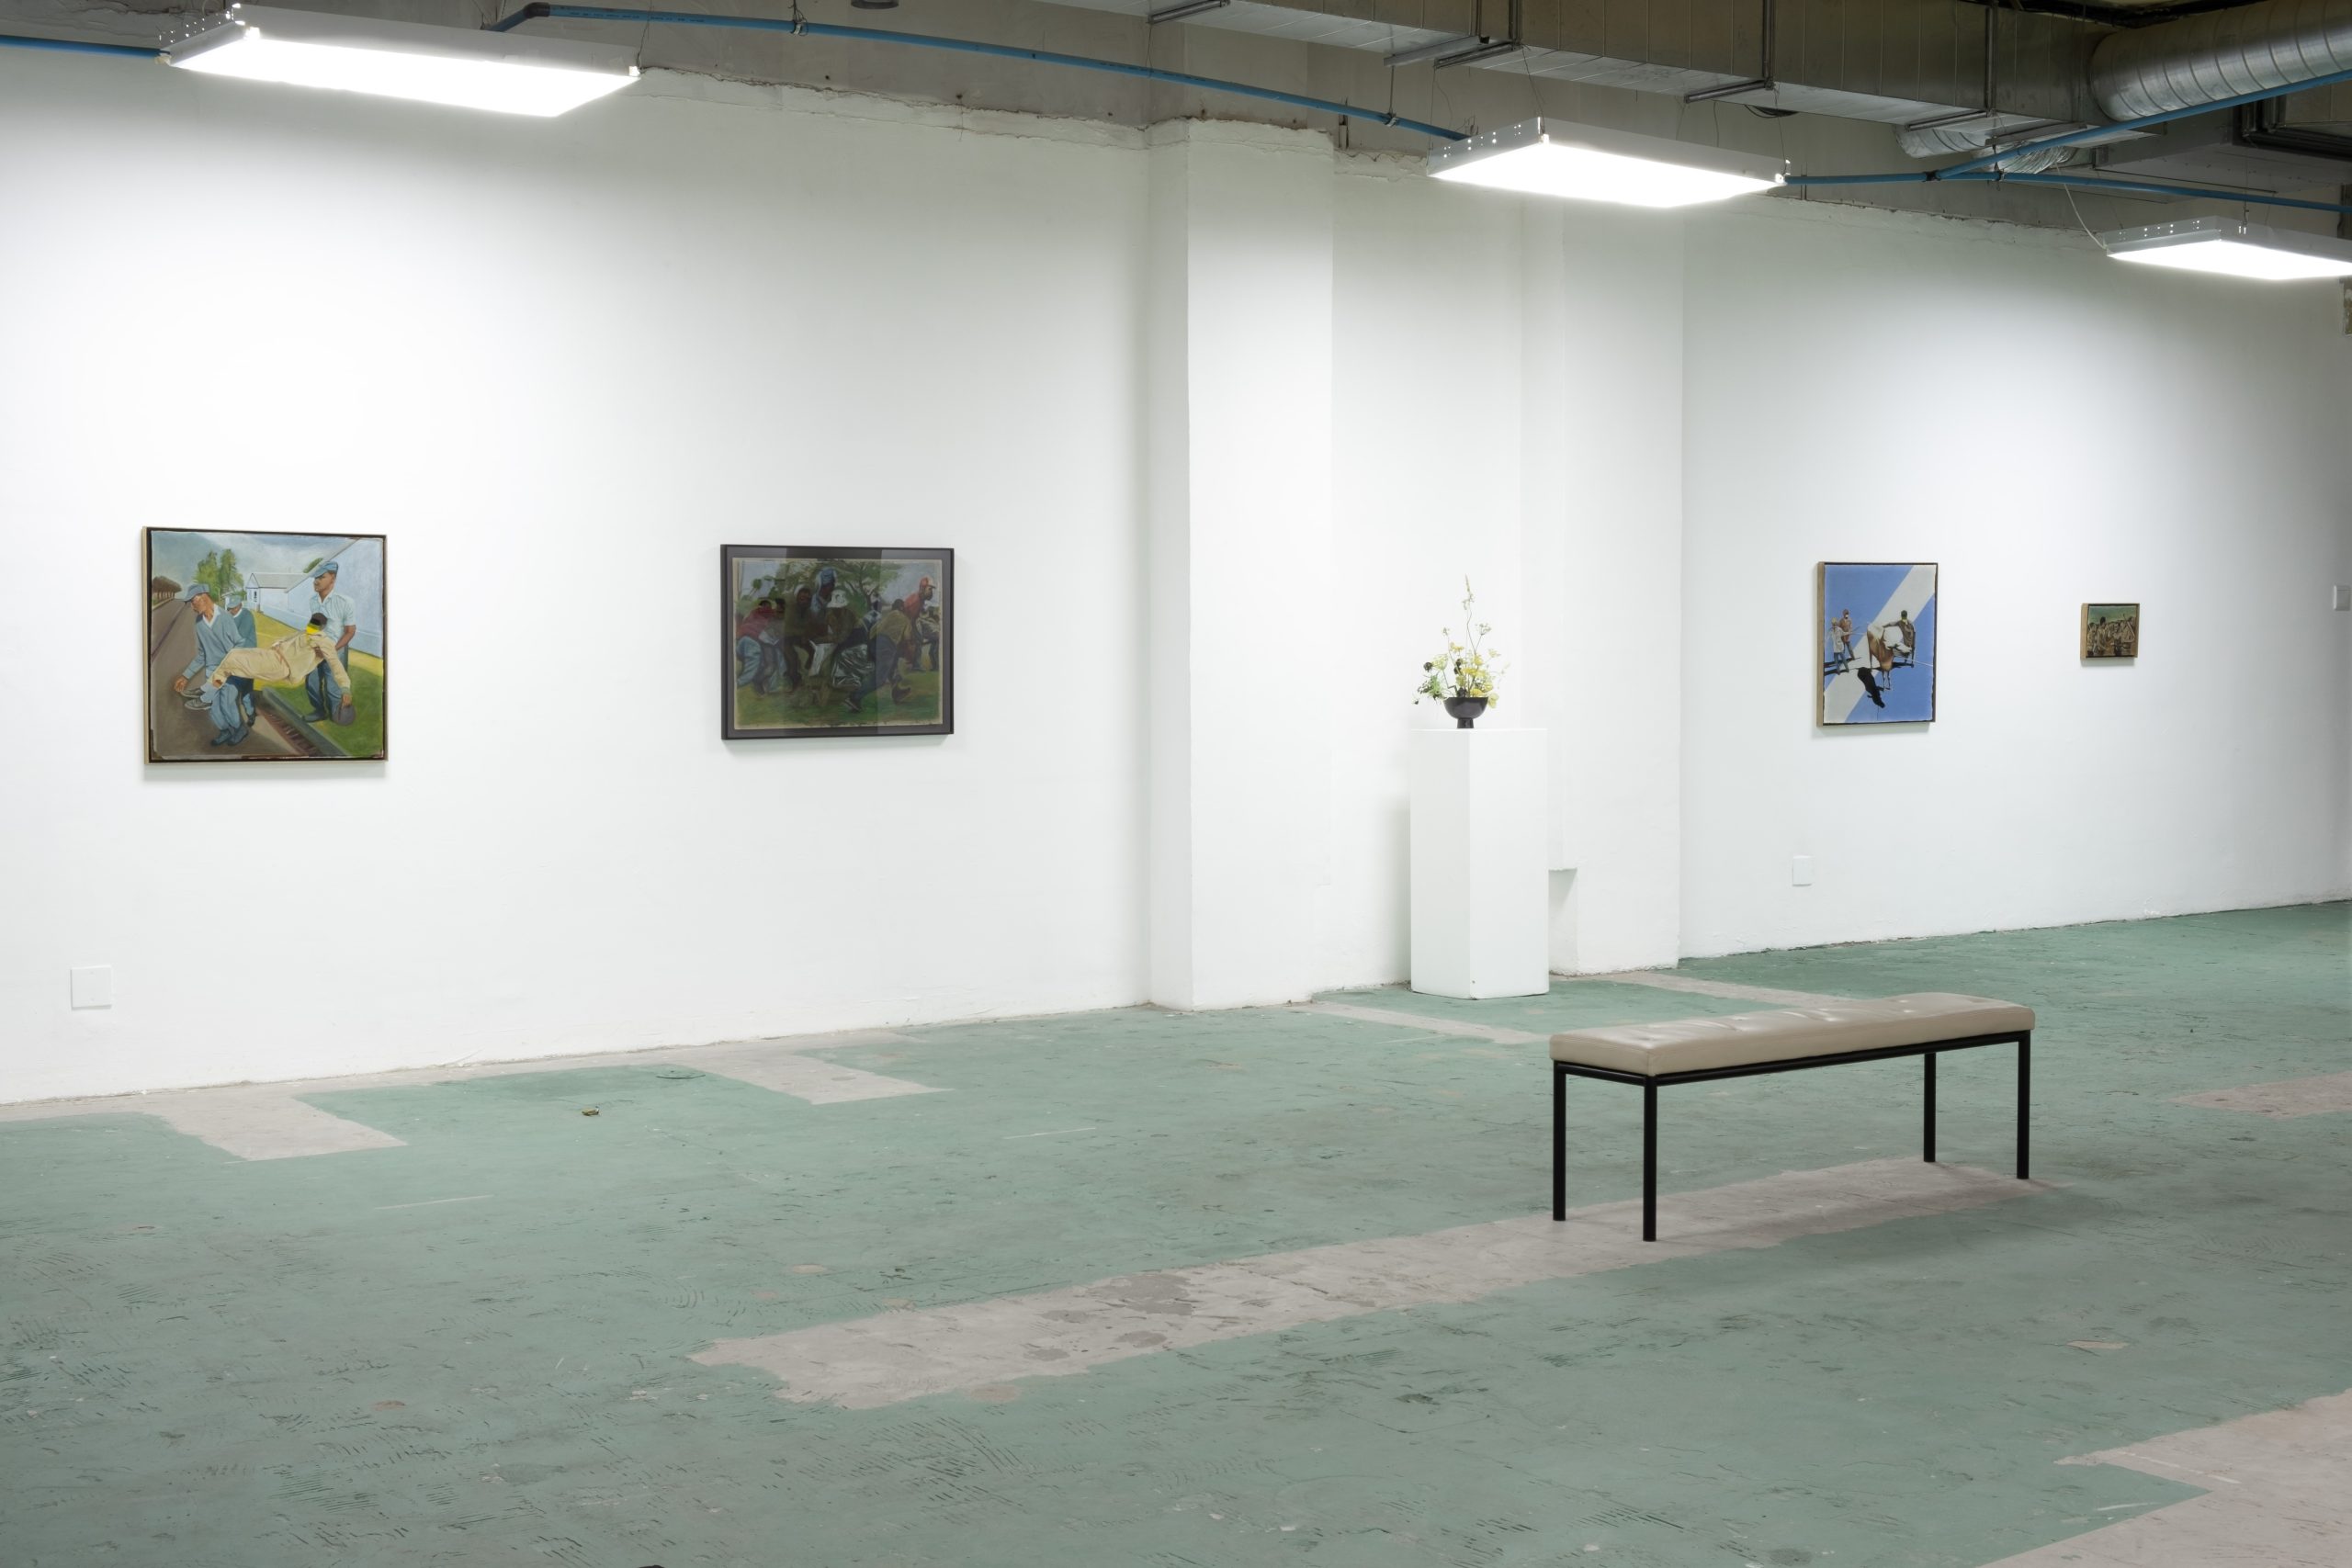 Installation view of Songezo Zantsi’s solo exhibition Iinkumbulo. (Image courtesy of Vela Projects)